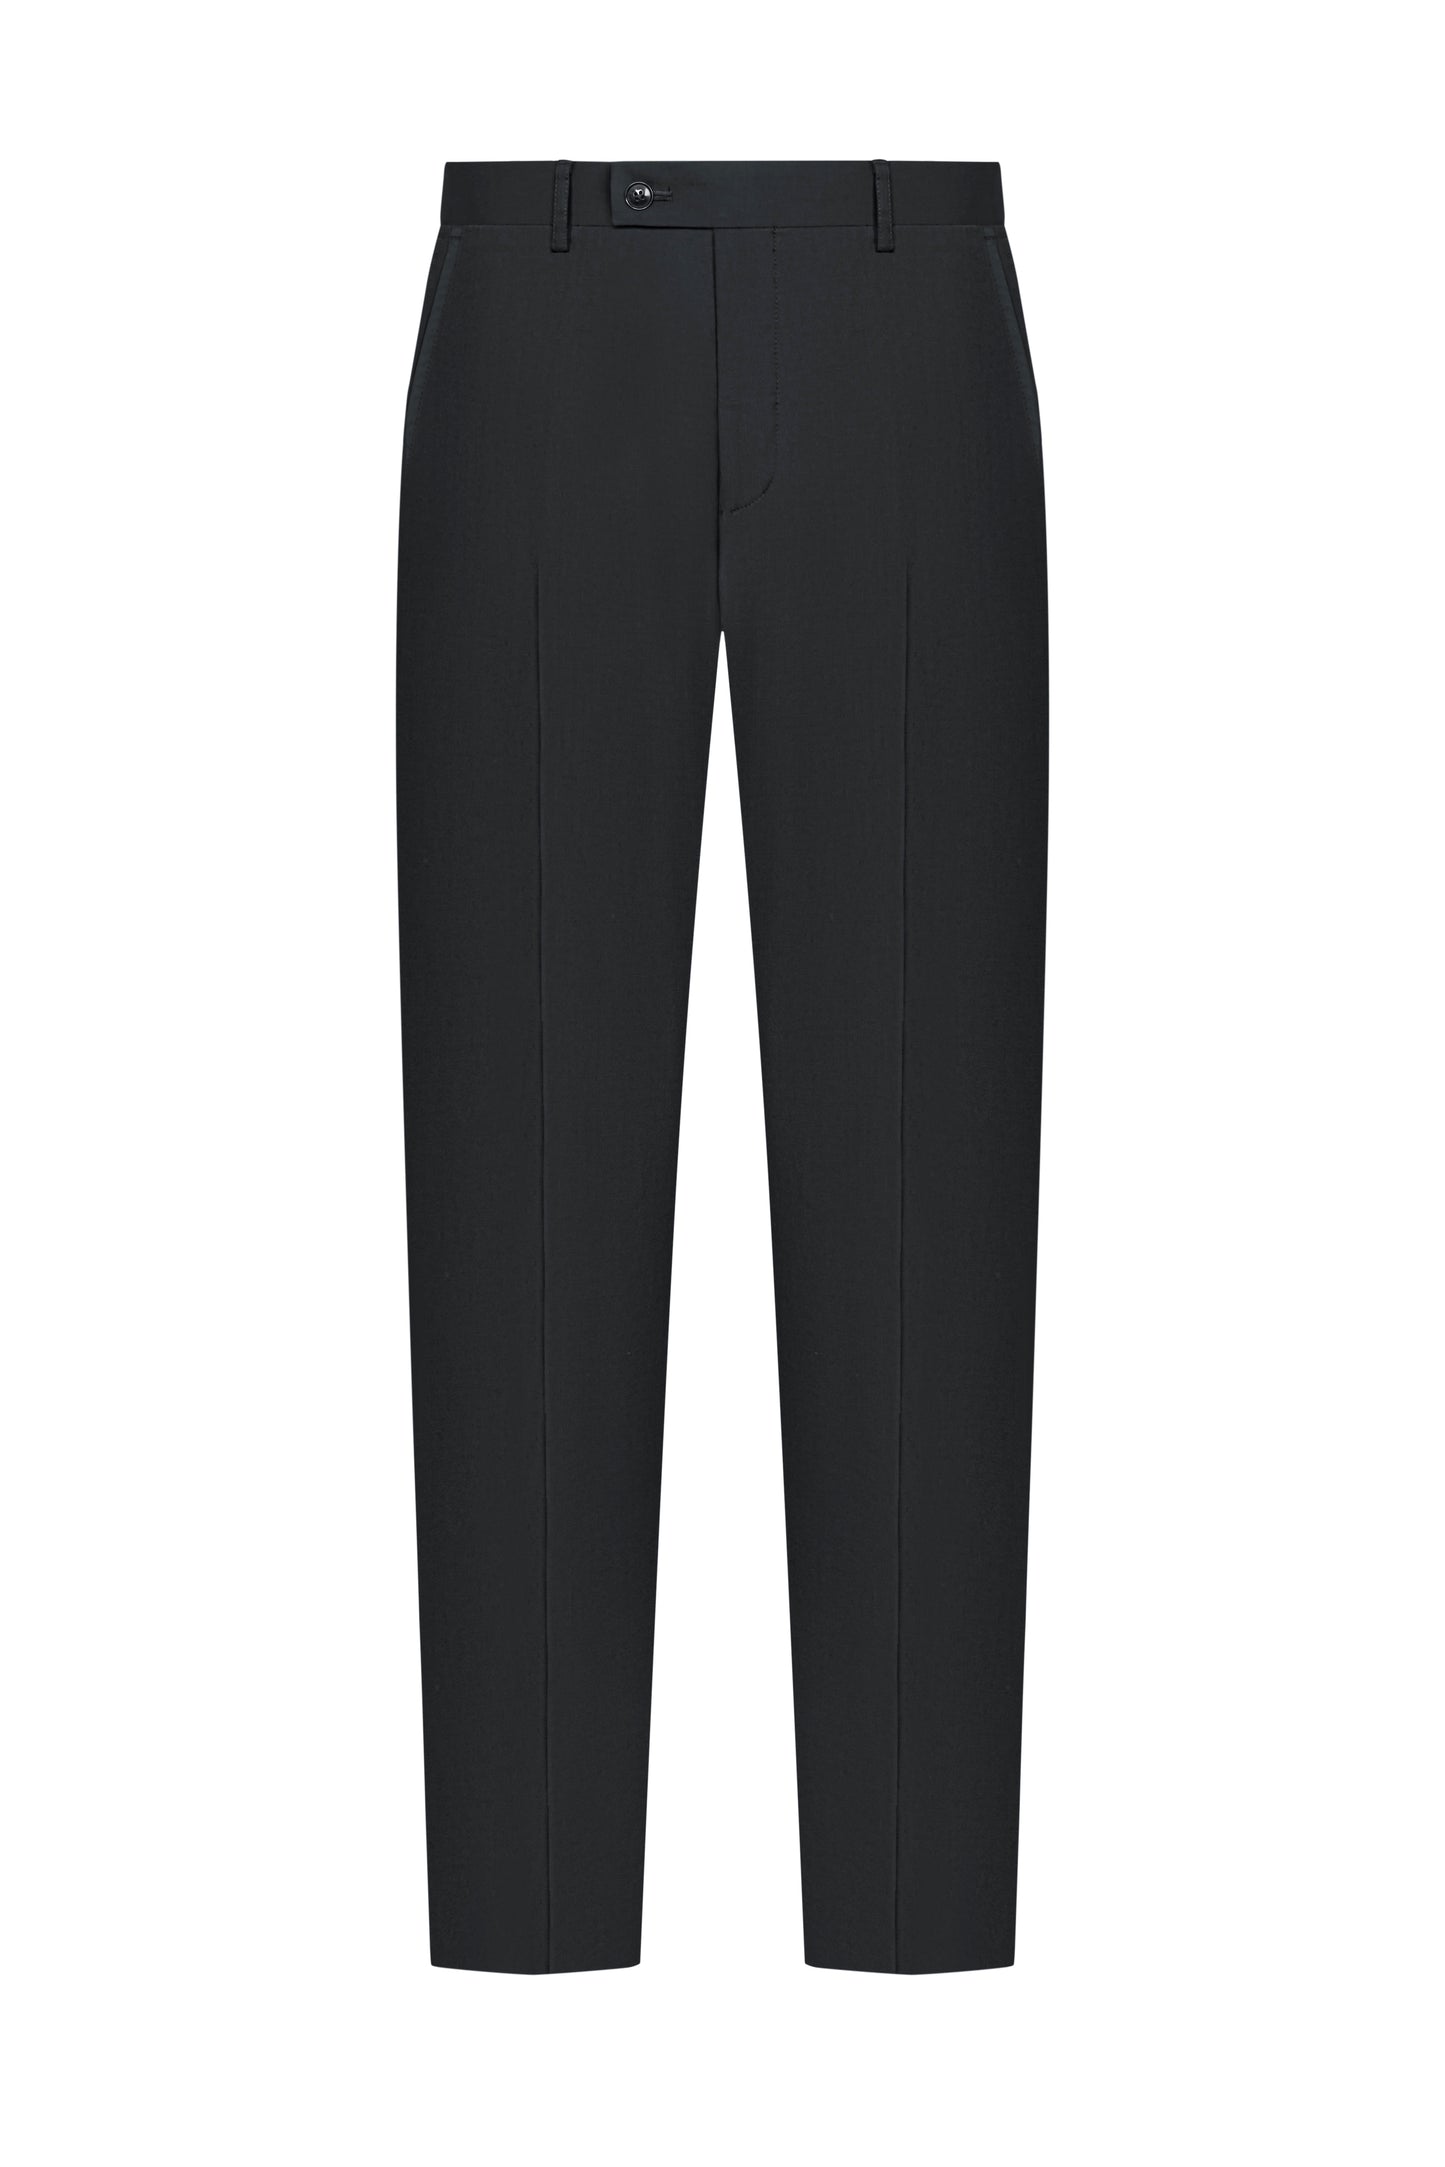 ES Essentials Carbon Grey Twill Custom Suit